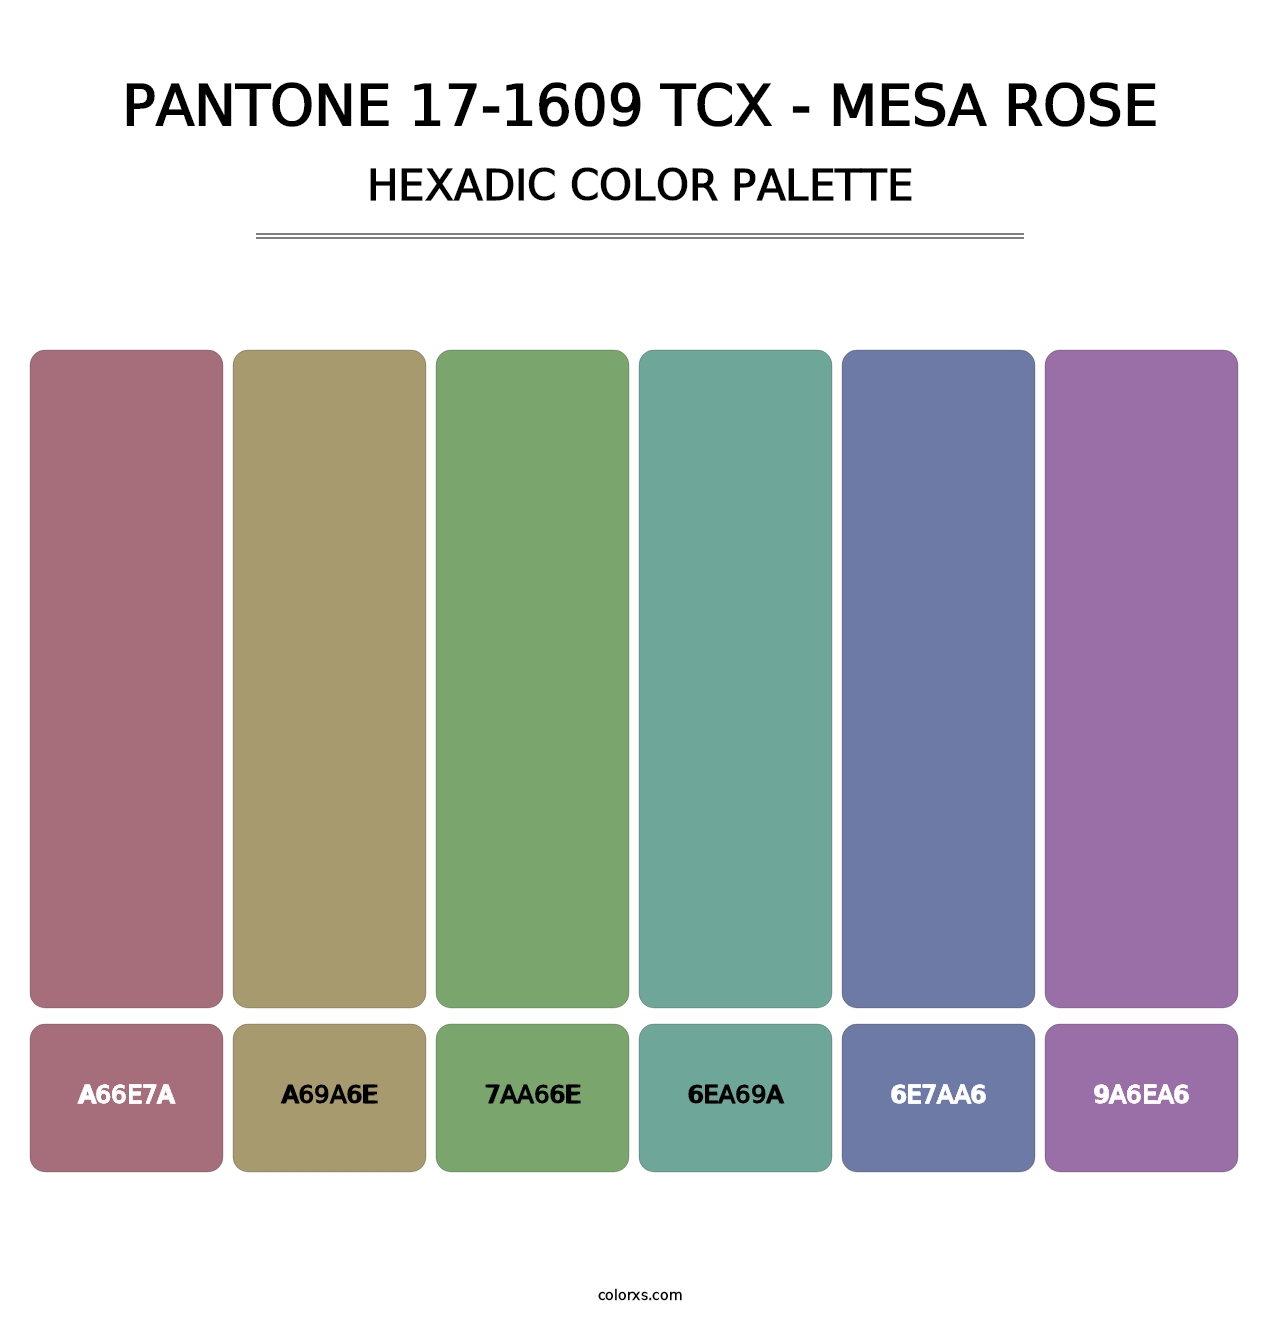 PANTONE 17-1609 TCX - Mesa Rose - Hexadic Color Palette